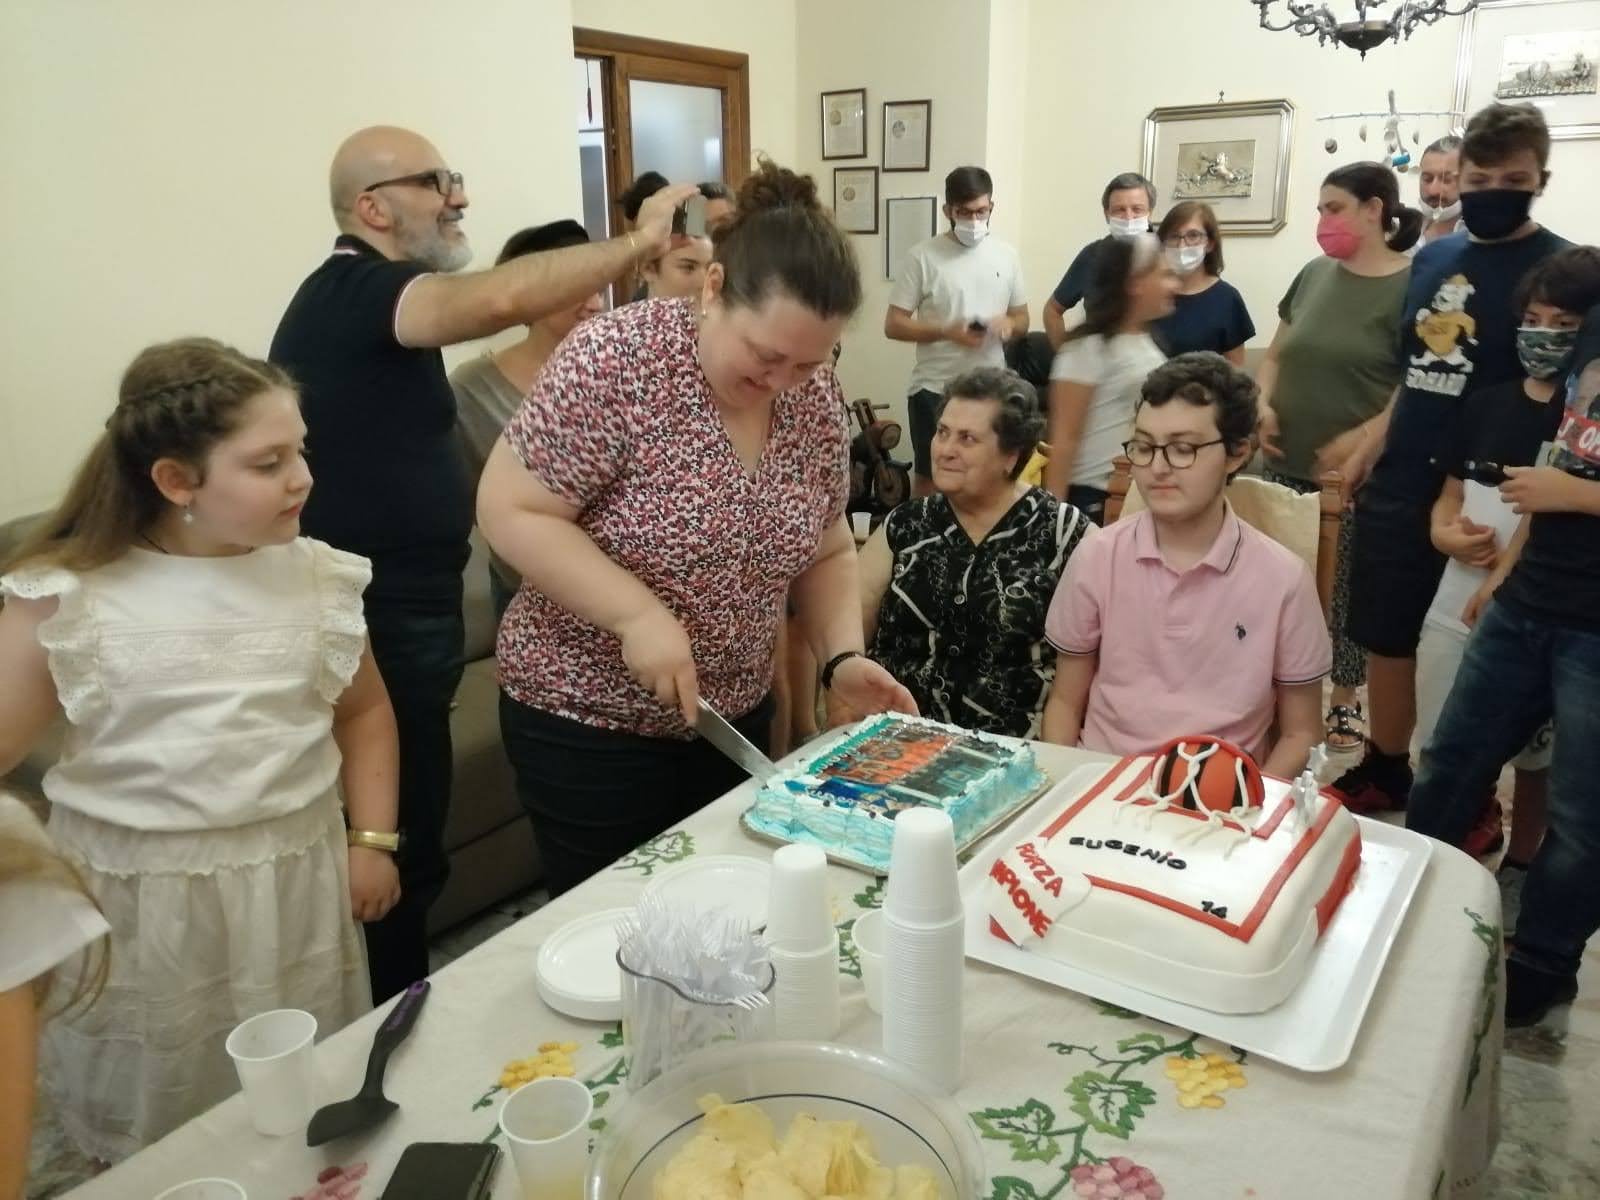 La coupe du gâteau d'Eugenio